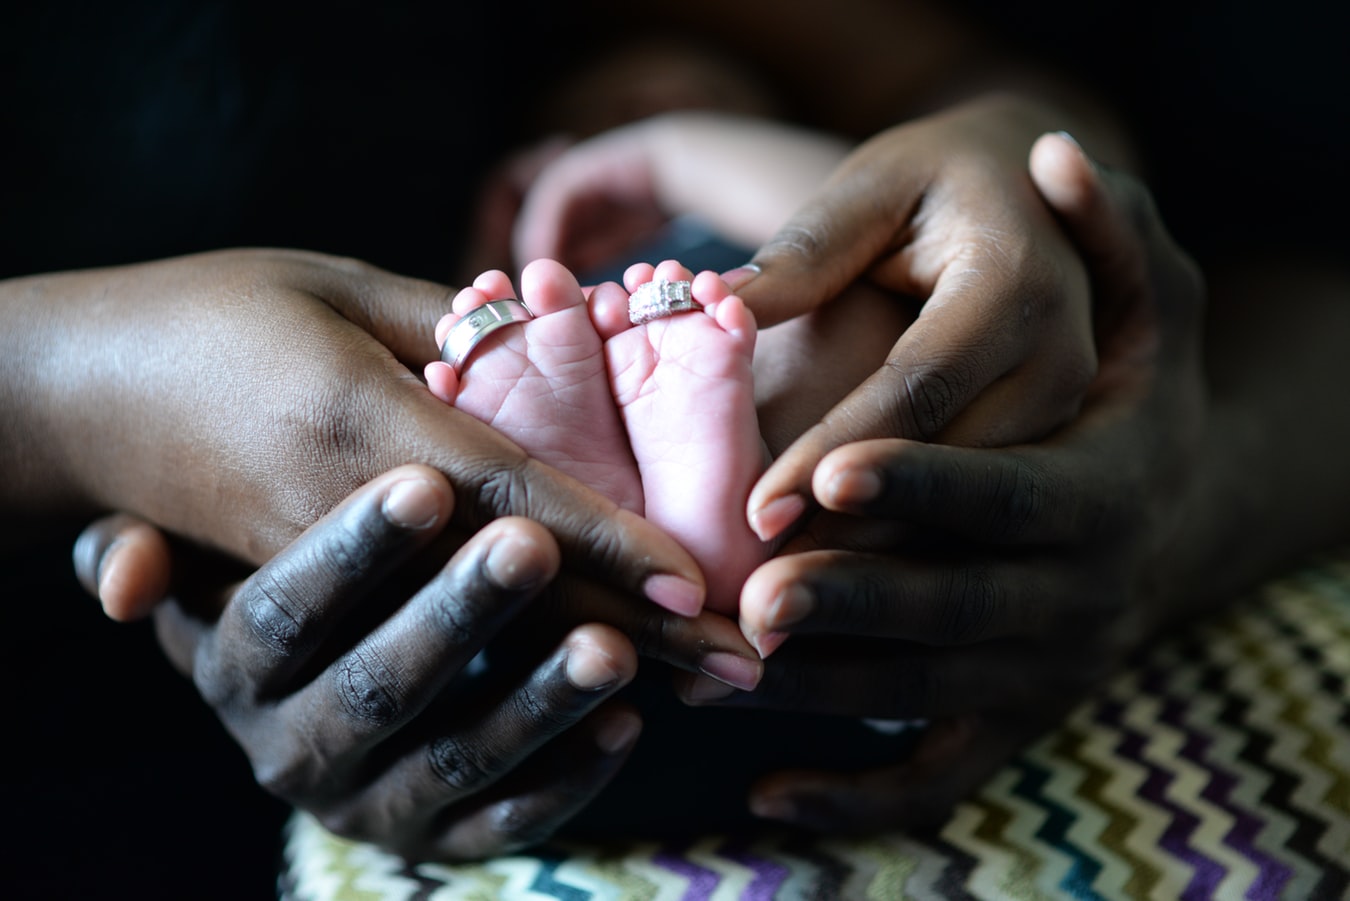 Une mère africaine tenant son bébé dans les bras (photo d'illustration).